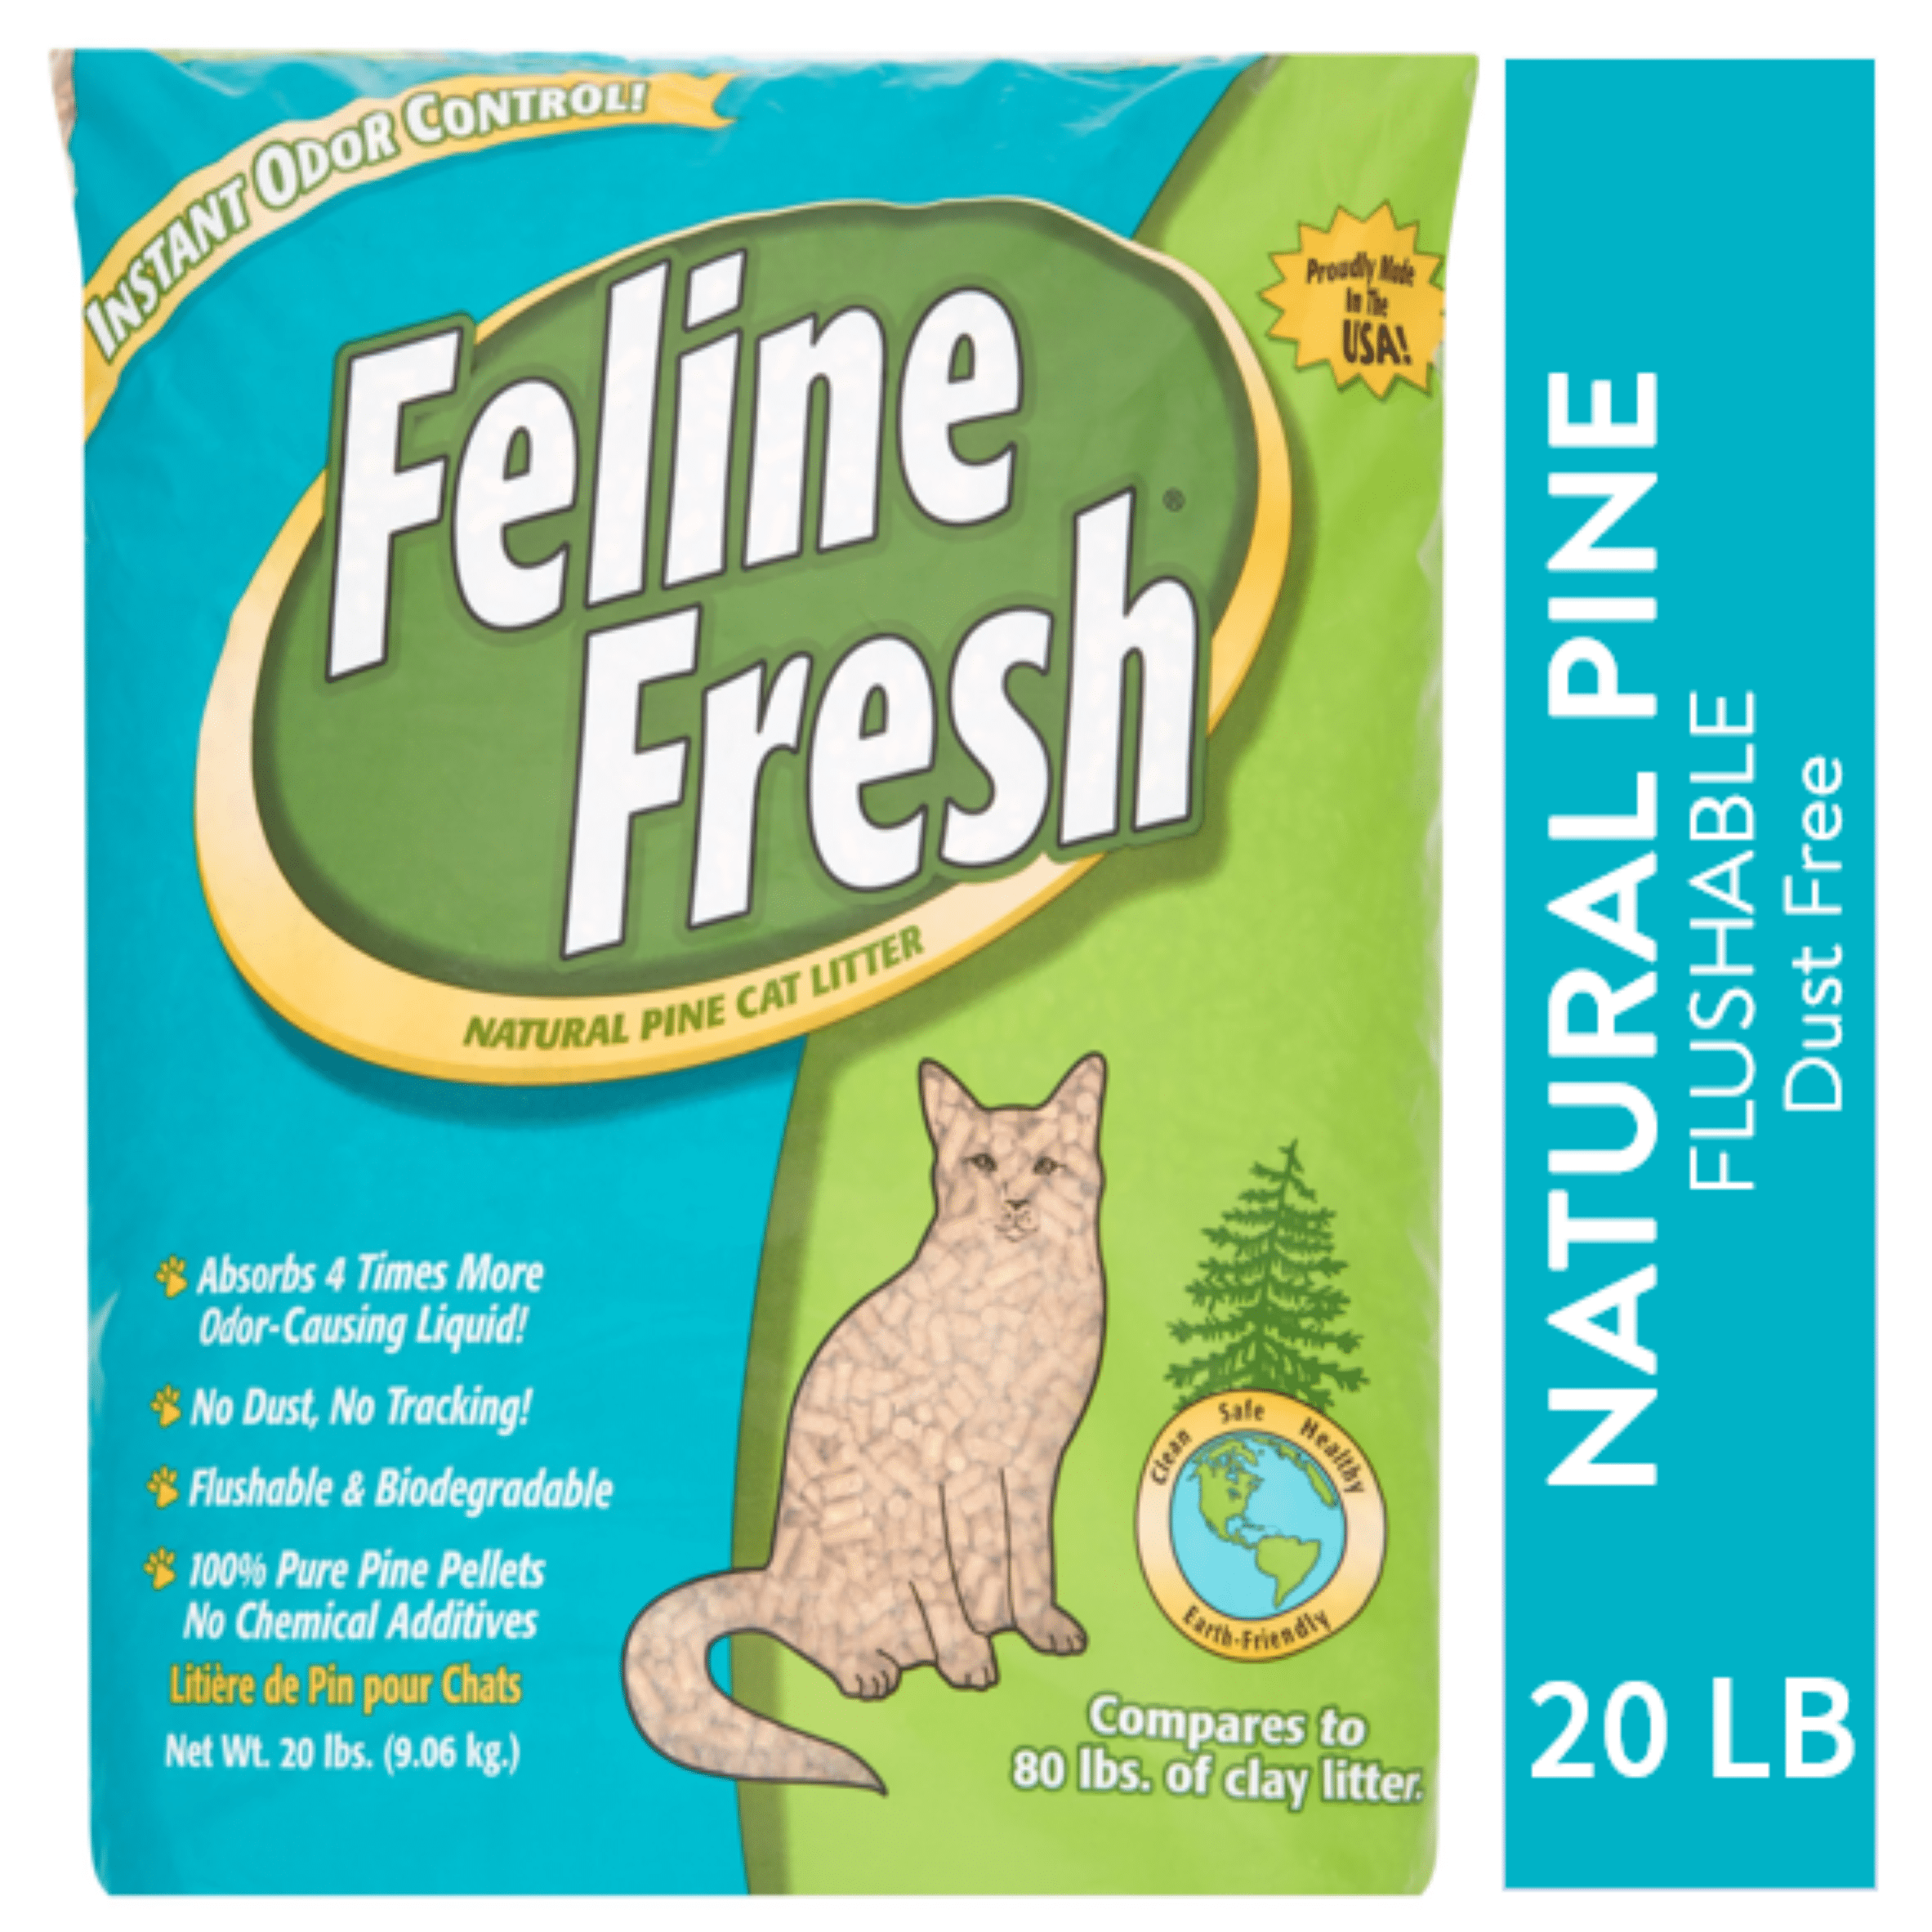 Feline Fresh Natural Pine Cat Litter 